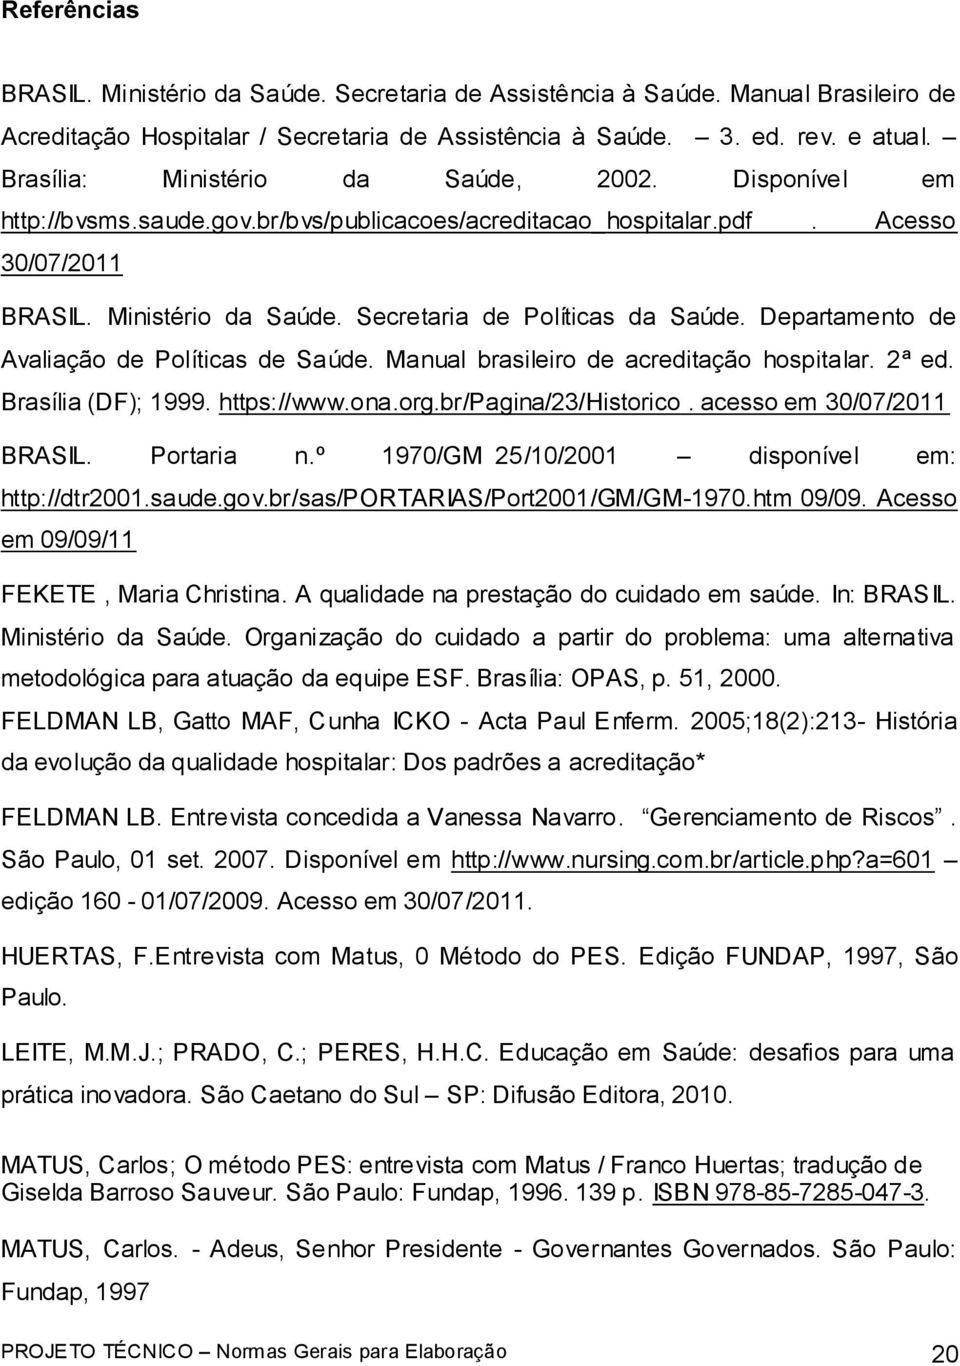 Departamento de Avaliação de Políticas de Saúde. Manual brasileiro de acreditação hospitalar. 2ª ed. Brasília (DF); 1999. https://www.ona.org.br/pagina/23/historico. acesso em 30/07/2011 BRASIL.